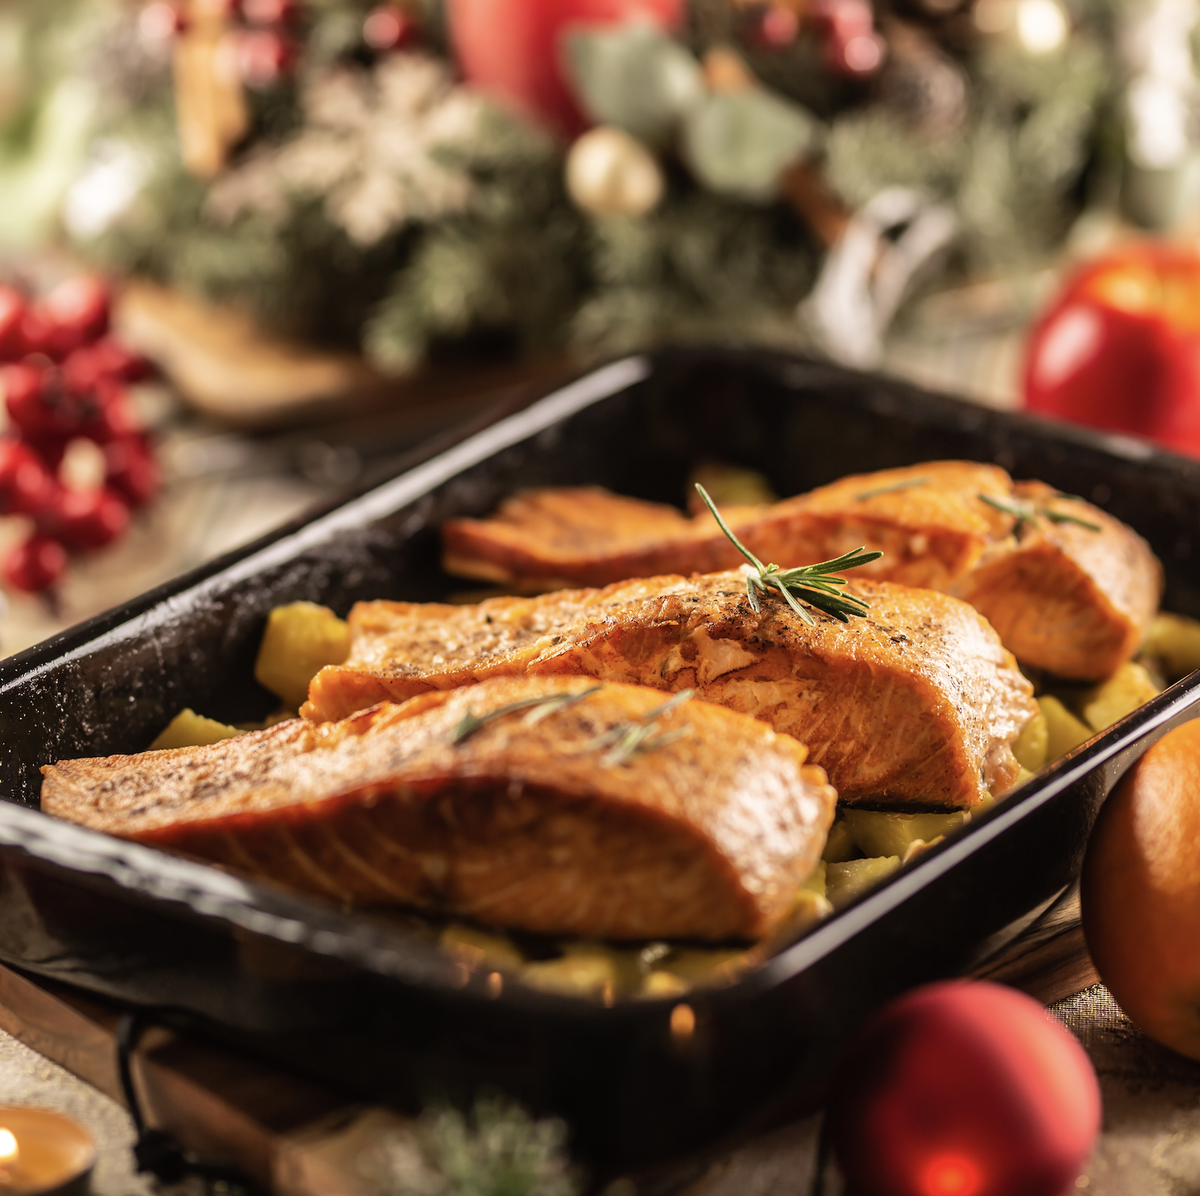 un menu alternativo y saludable es posible en las cenas navideñas